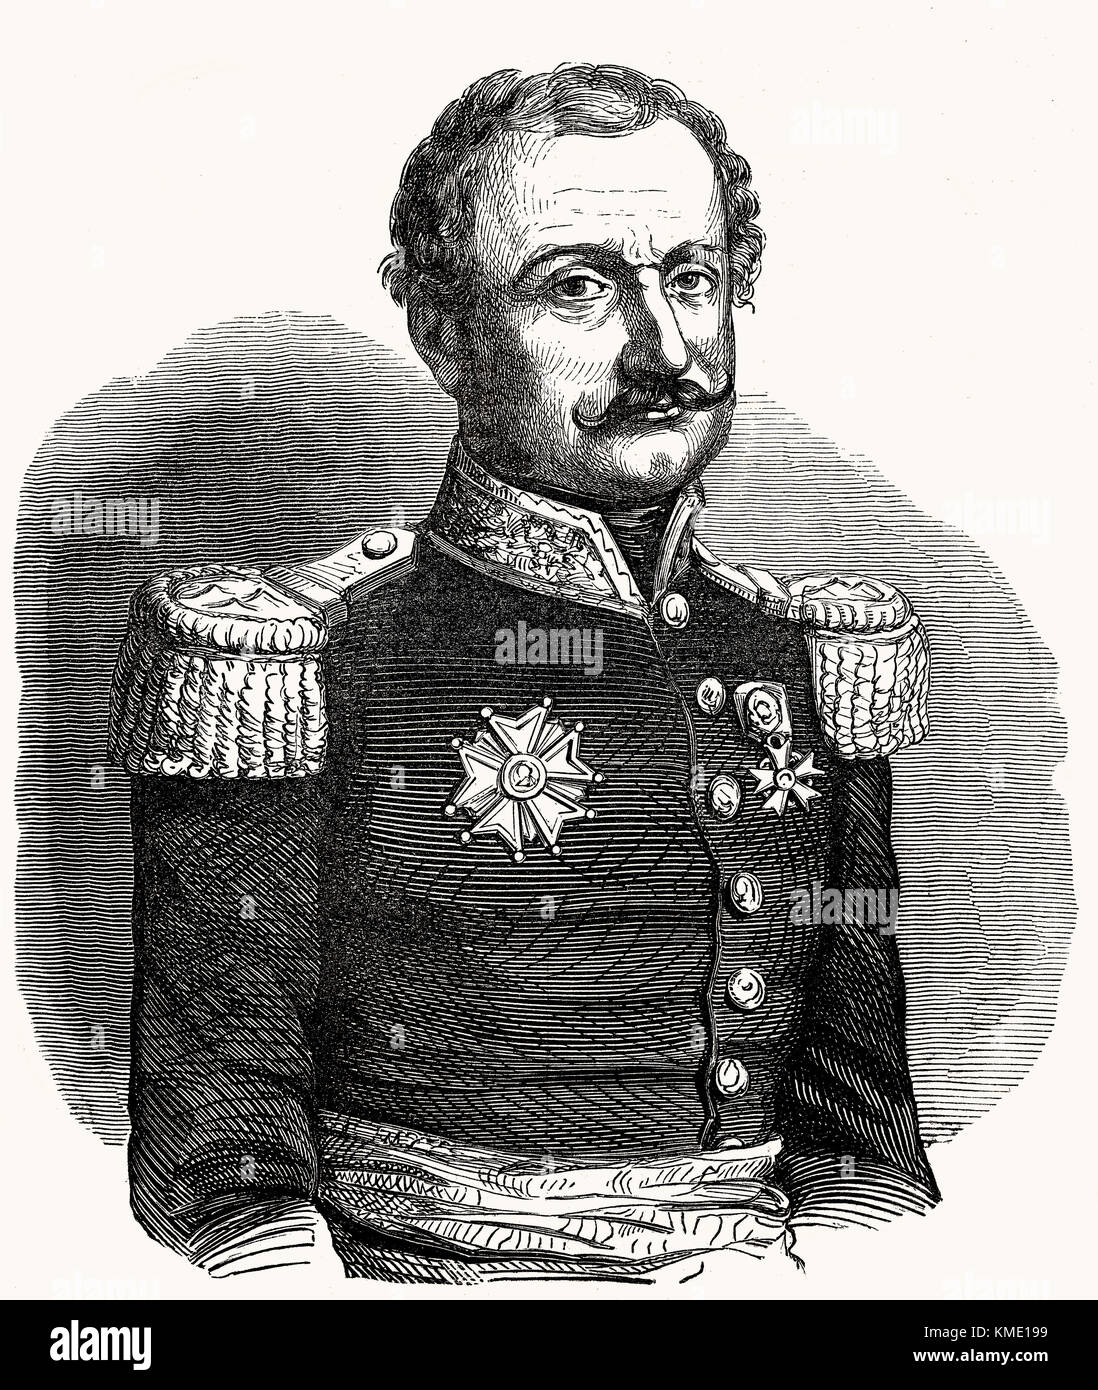 Der französische Befehlshaber und Marshal General Nicolas Charles Victor Oudinot, Herzog von Reggio, 1791 - 1863 Stockfoto